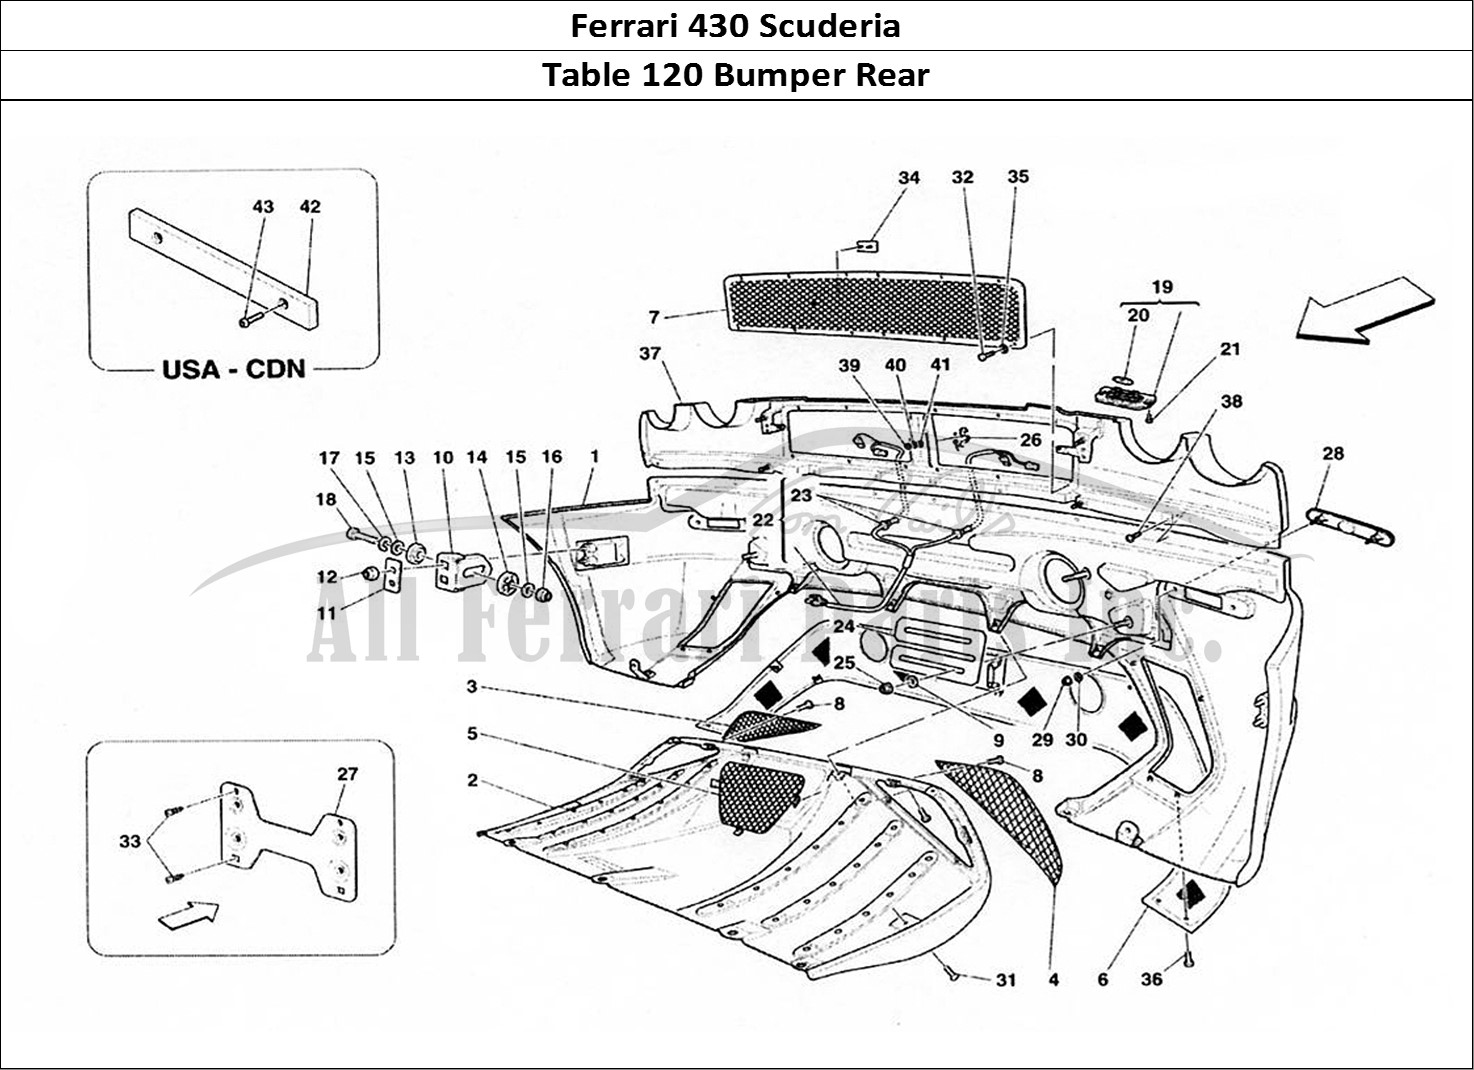 Ferrari Parts Ferrari 430 Scuderia Page 120 Rear Bumper